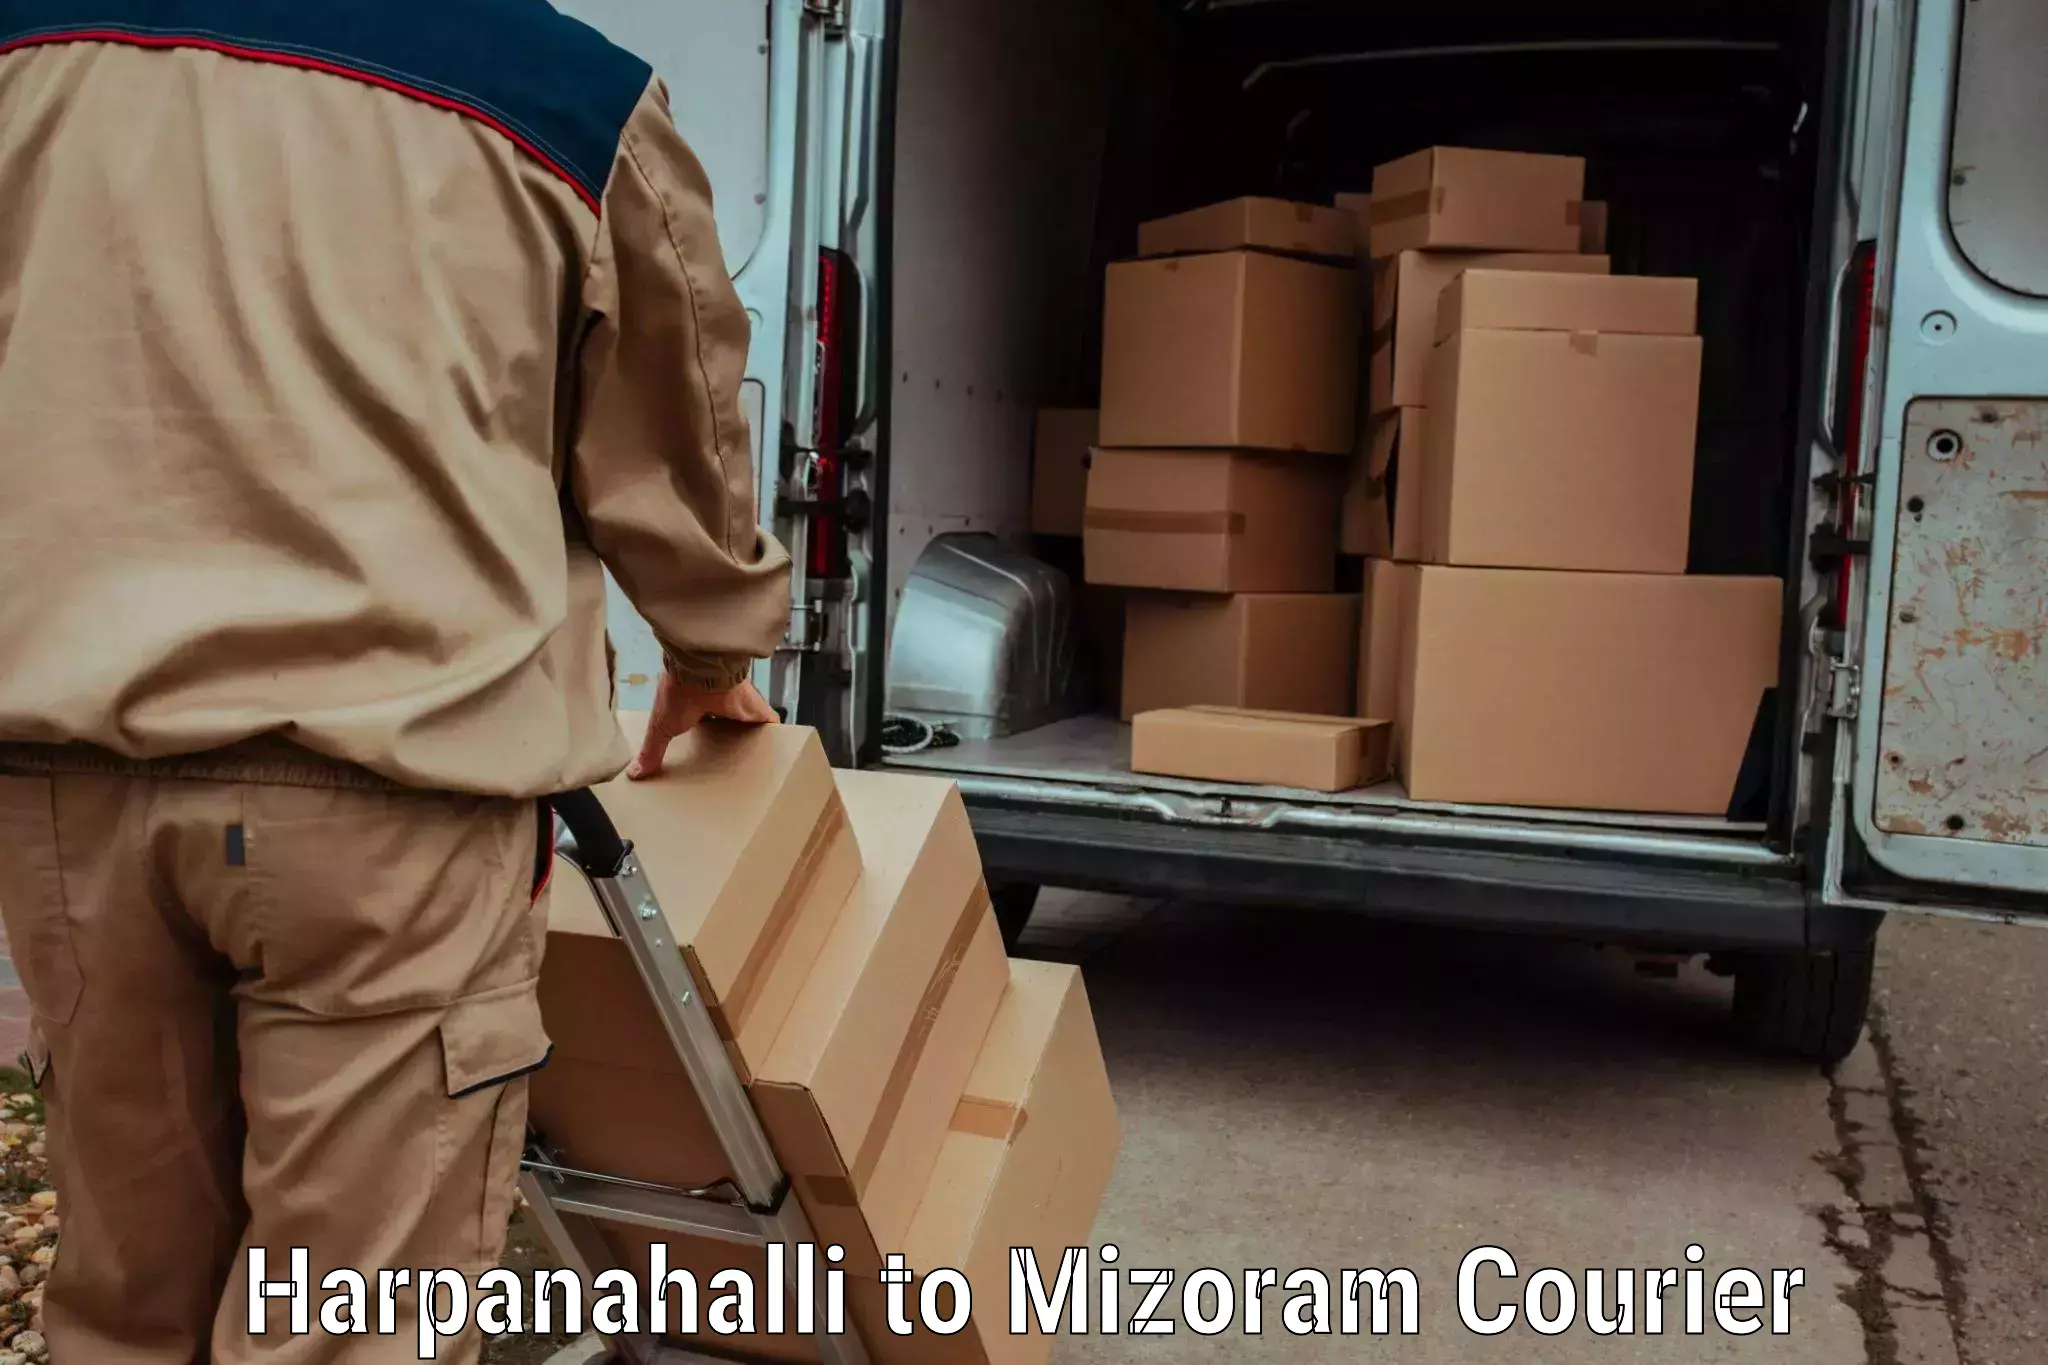 Customer-centric shipping in Harpanahalli to Darlawn